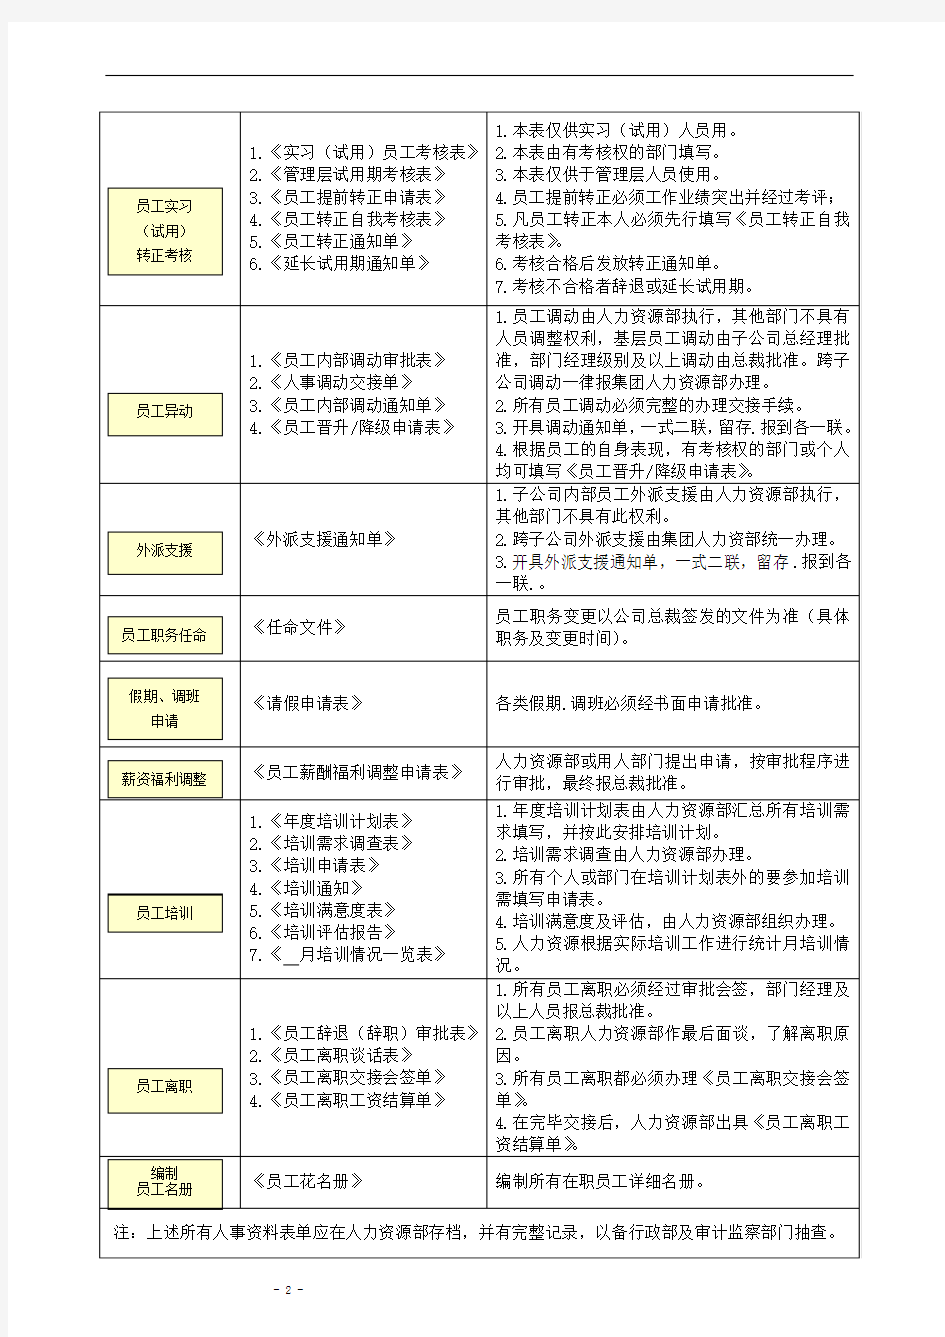 【2013招聘面试必备】HR精美实用表单